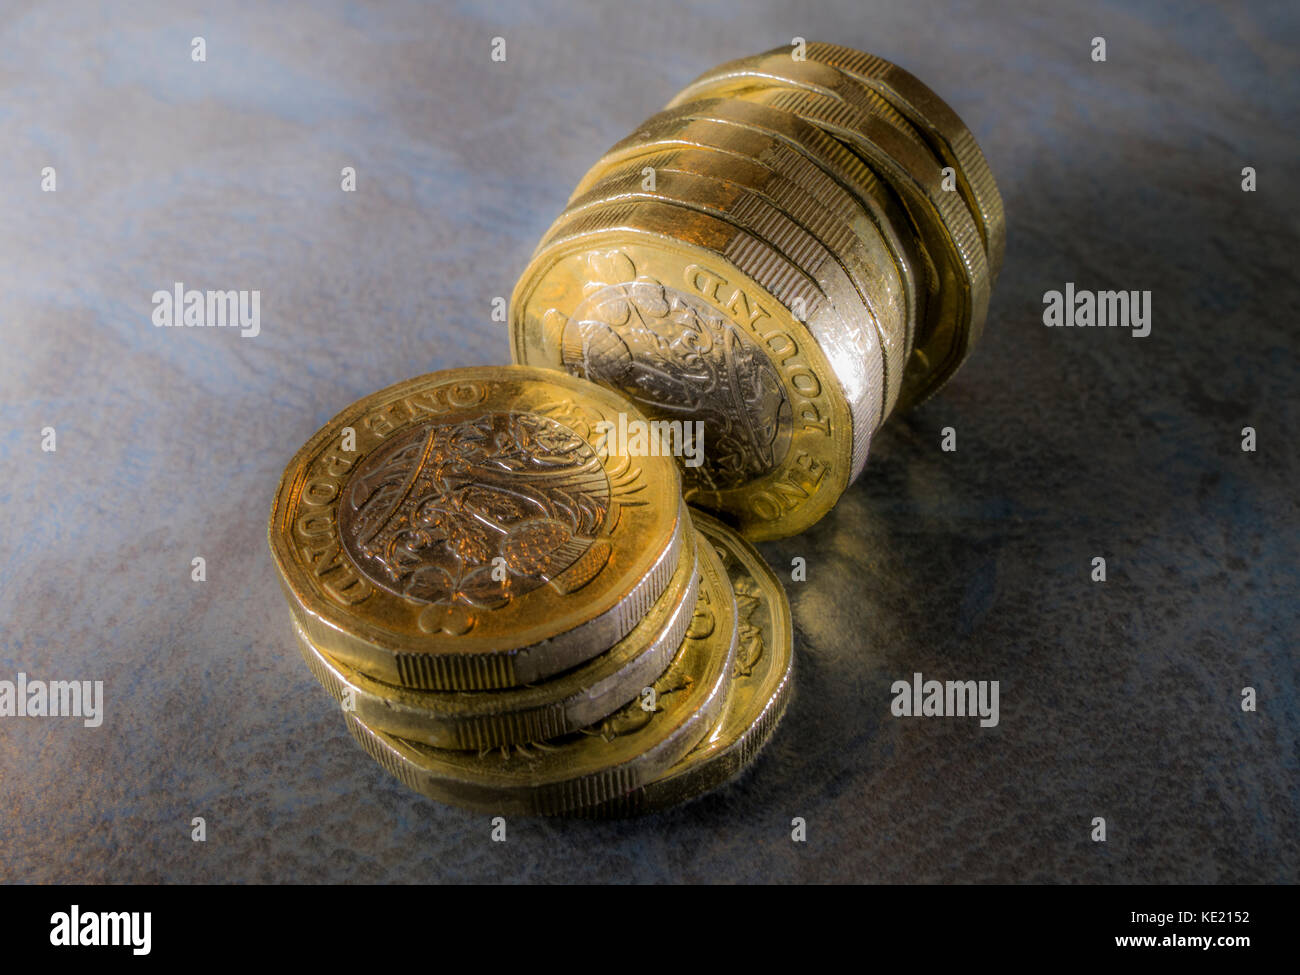 Nuovo 12 lati sterling pound monete contro un sottile dello sfondo. Possono essere utilizzati per illustrare ogni aspetto della nuova libbre / British denaro / REGNO UNITO VALUTA. Foto Stock